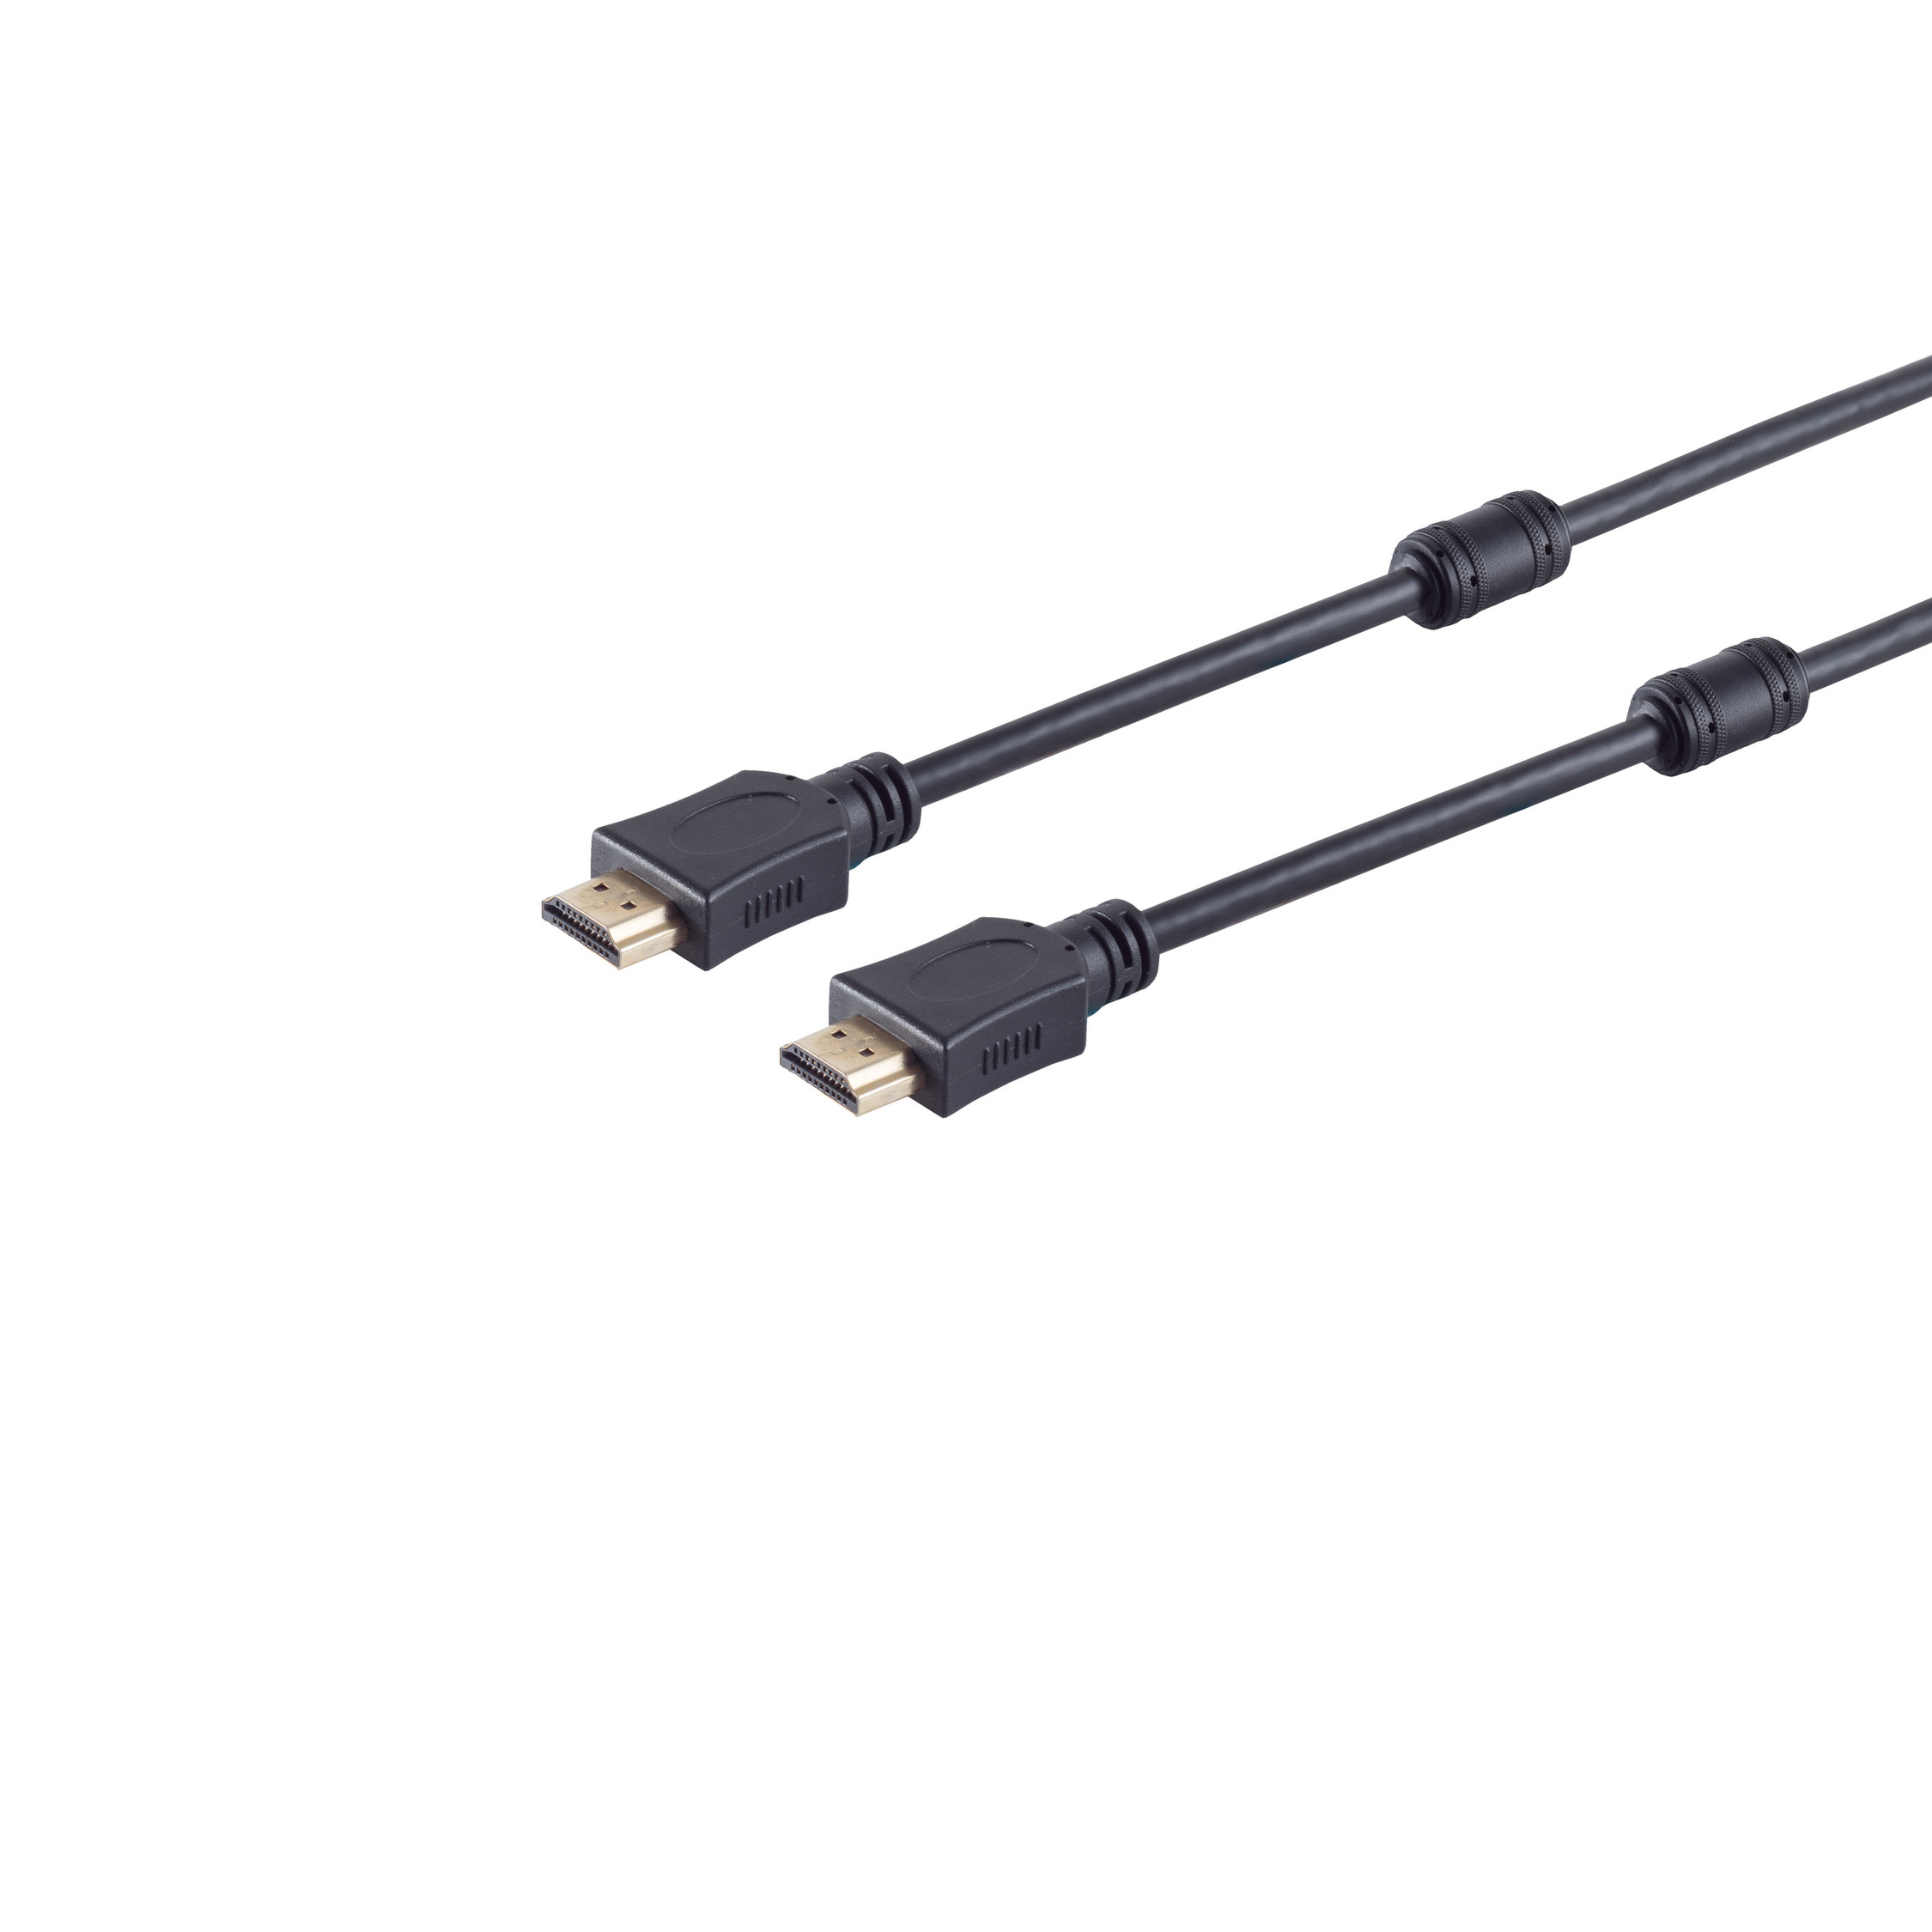 S/CONN MAXIMUM A-Stecker/HDMI Ferrit HDMI HEAC HDMI 3m Kabel A-Stecker CONNECTIVITY verg